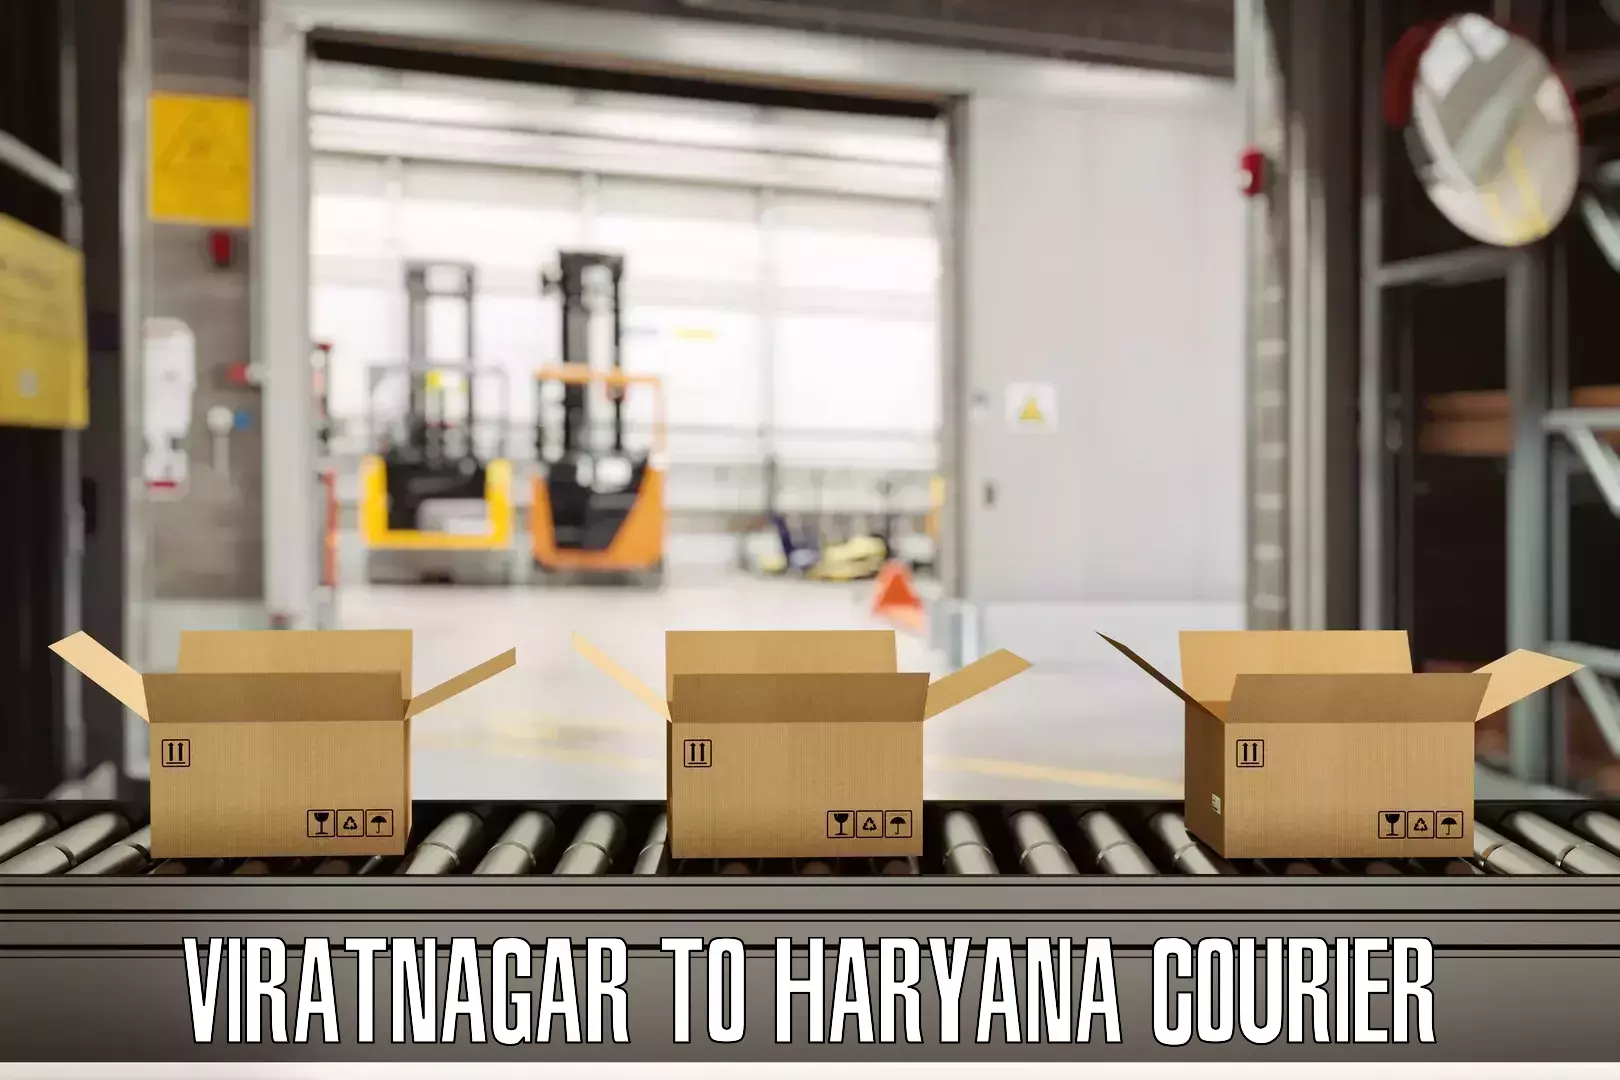 Baggage shipping service Viratnagar to Sohna